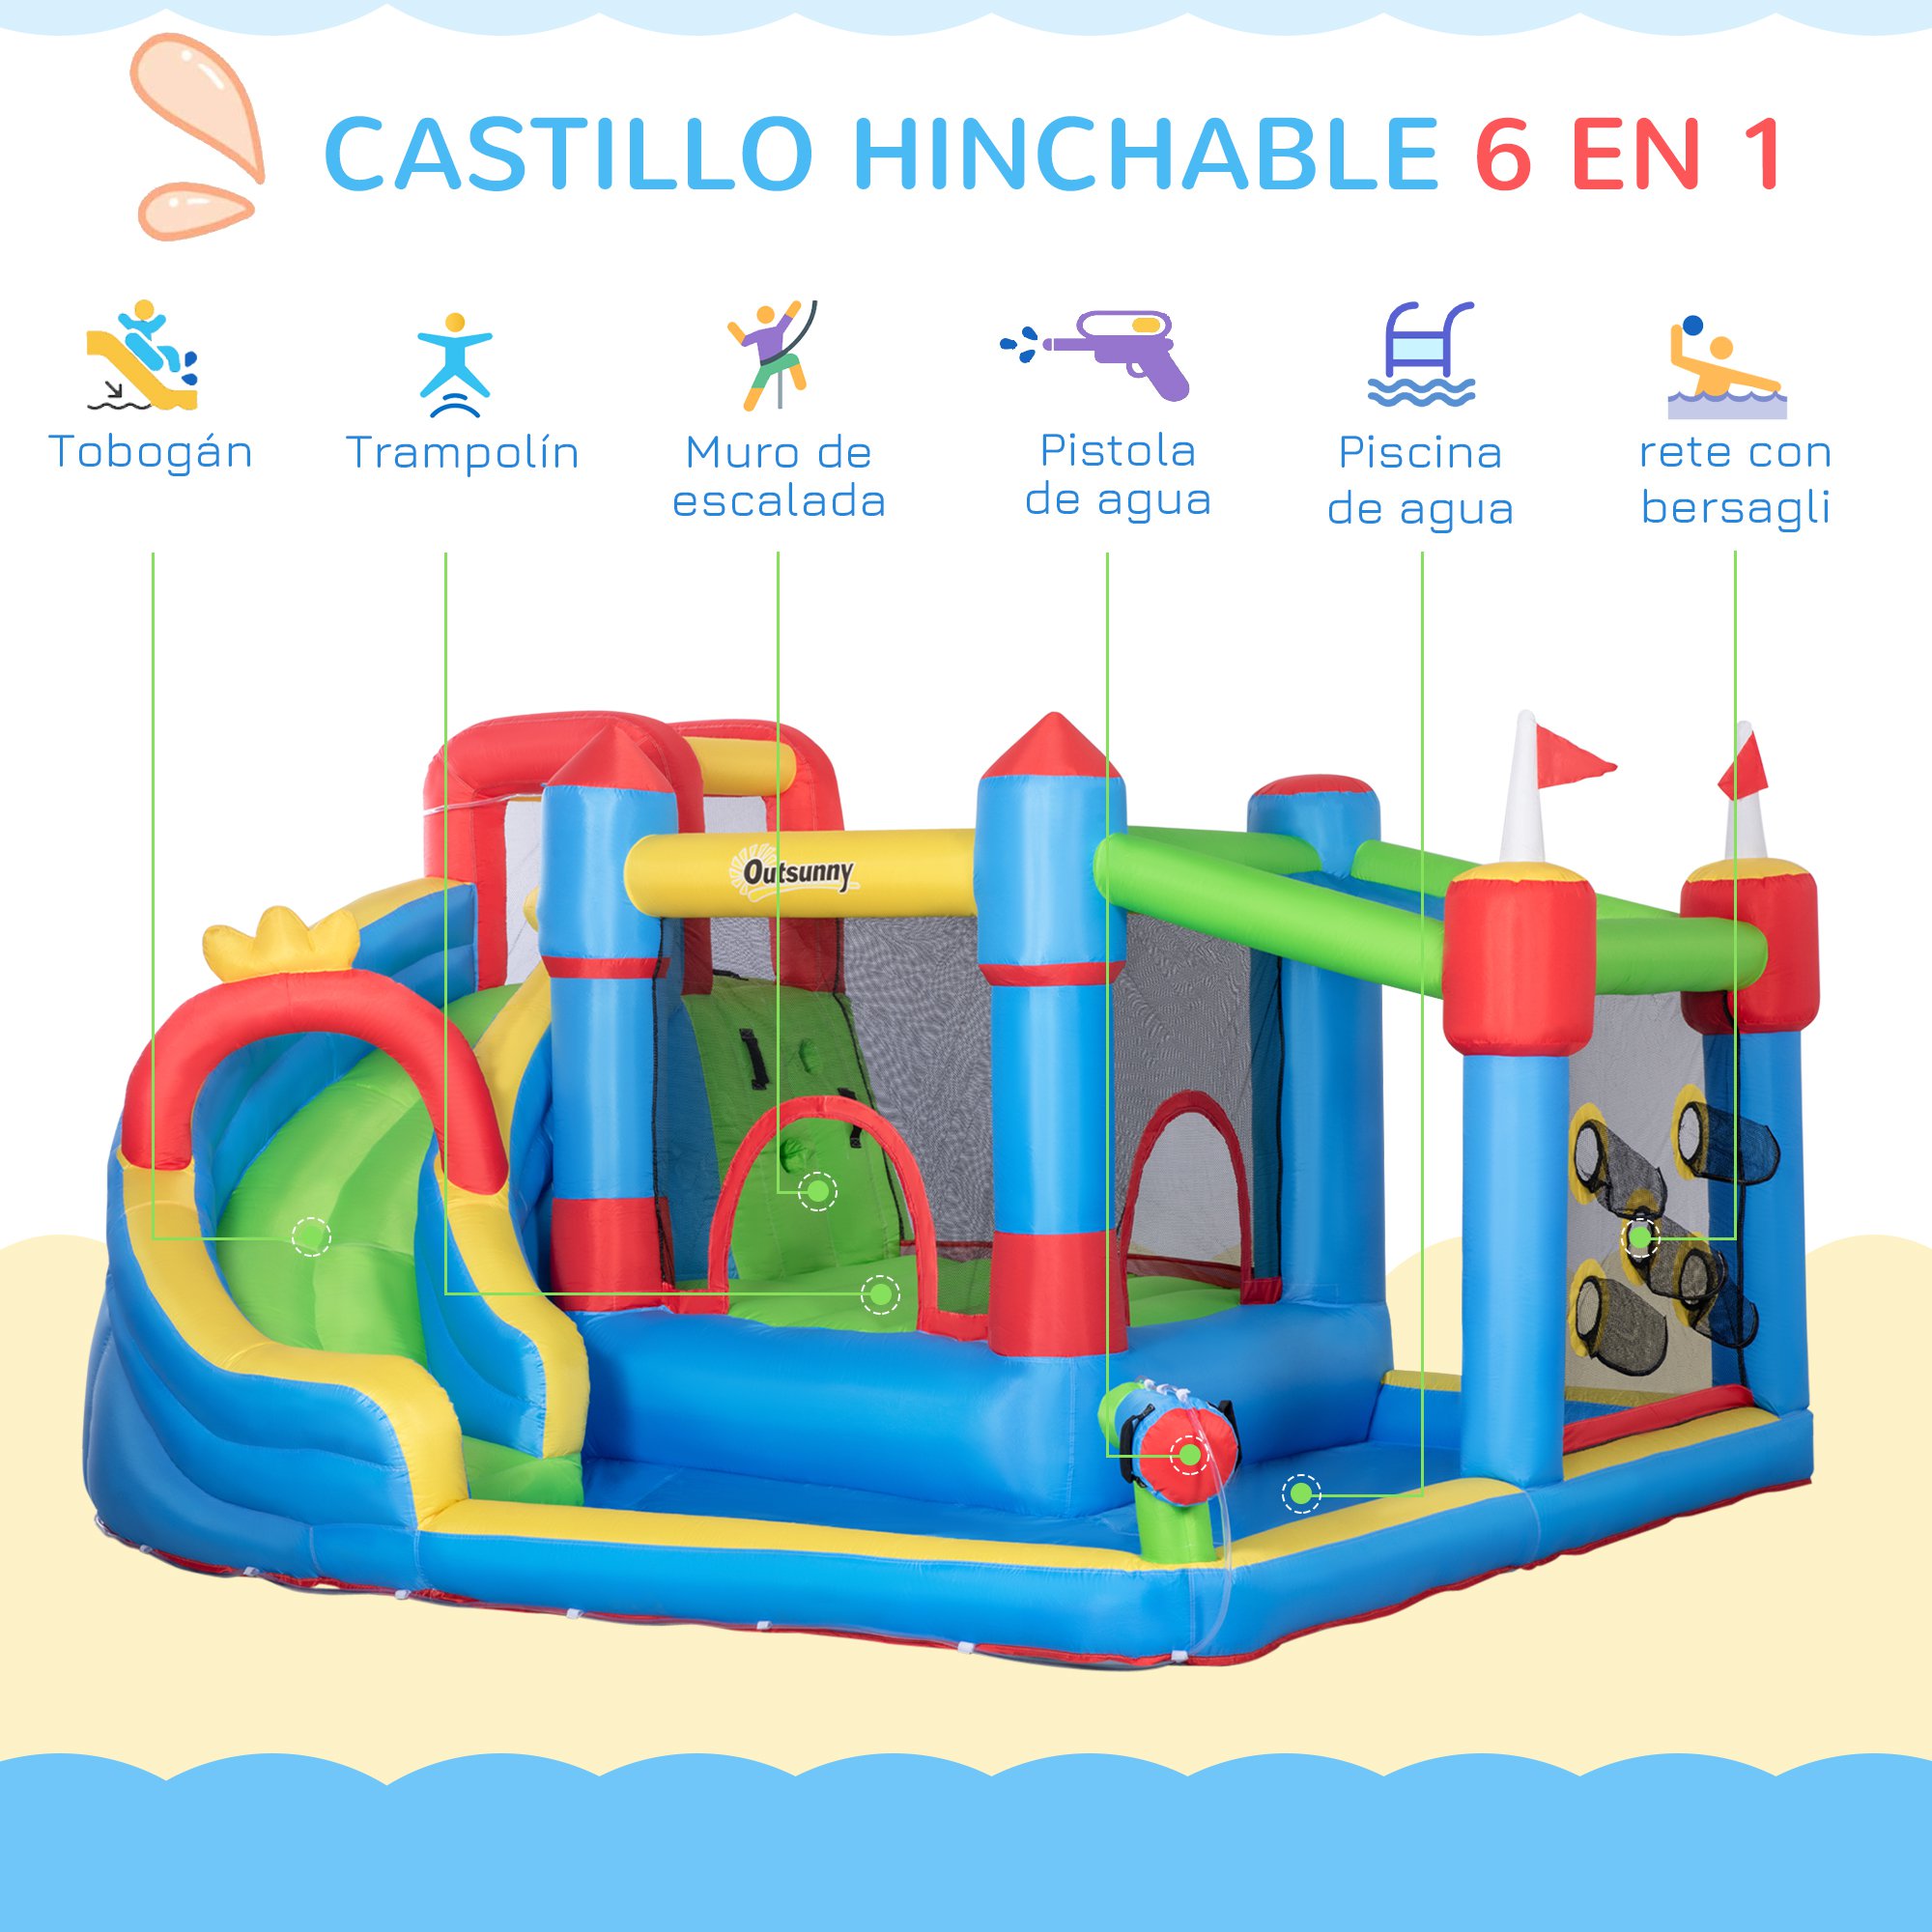 Castillo Hinchable Outsunny 342-040v90